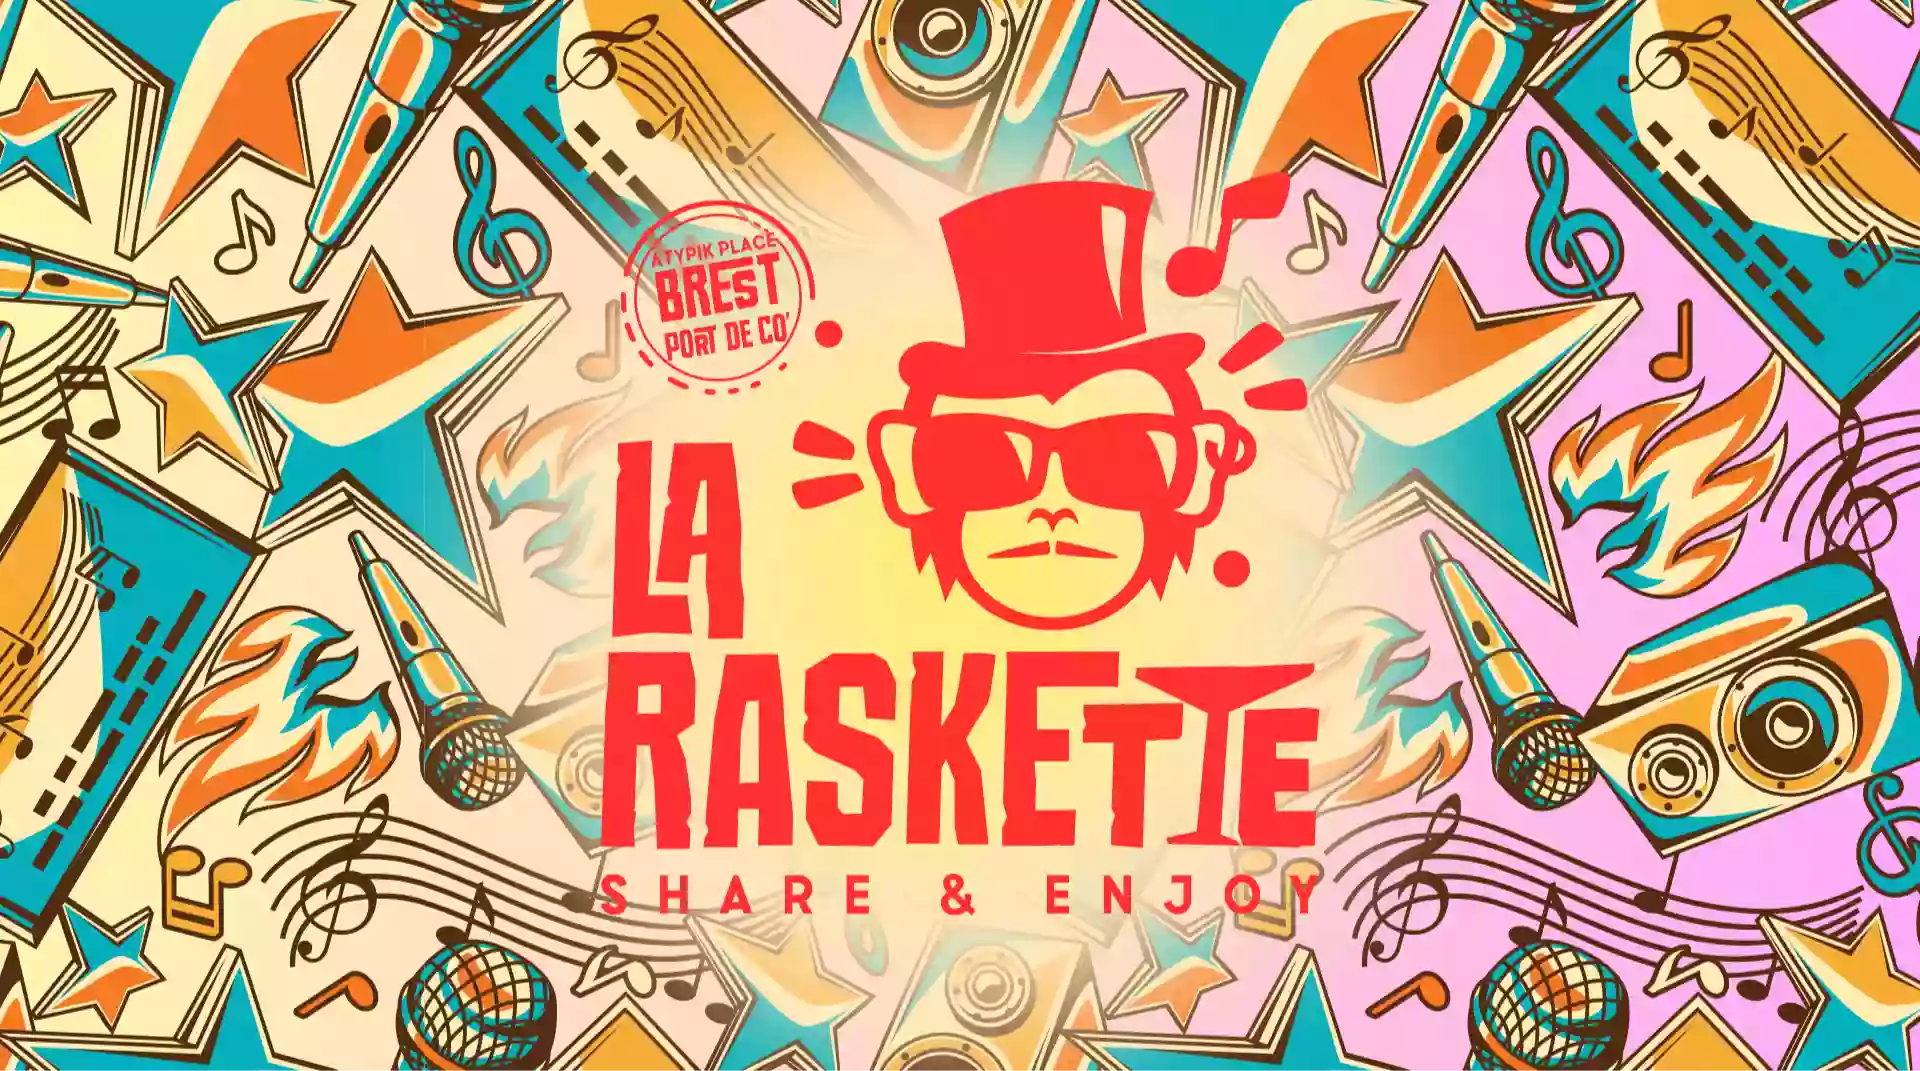 La Raskette | Café-concert & Bar de nuit à Brest